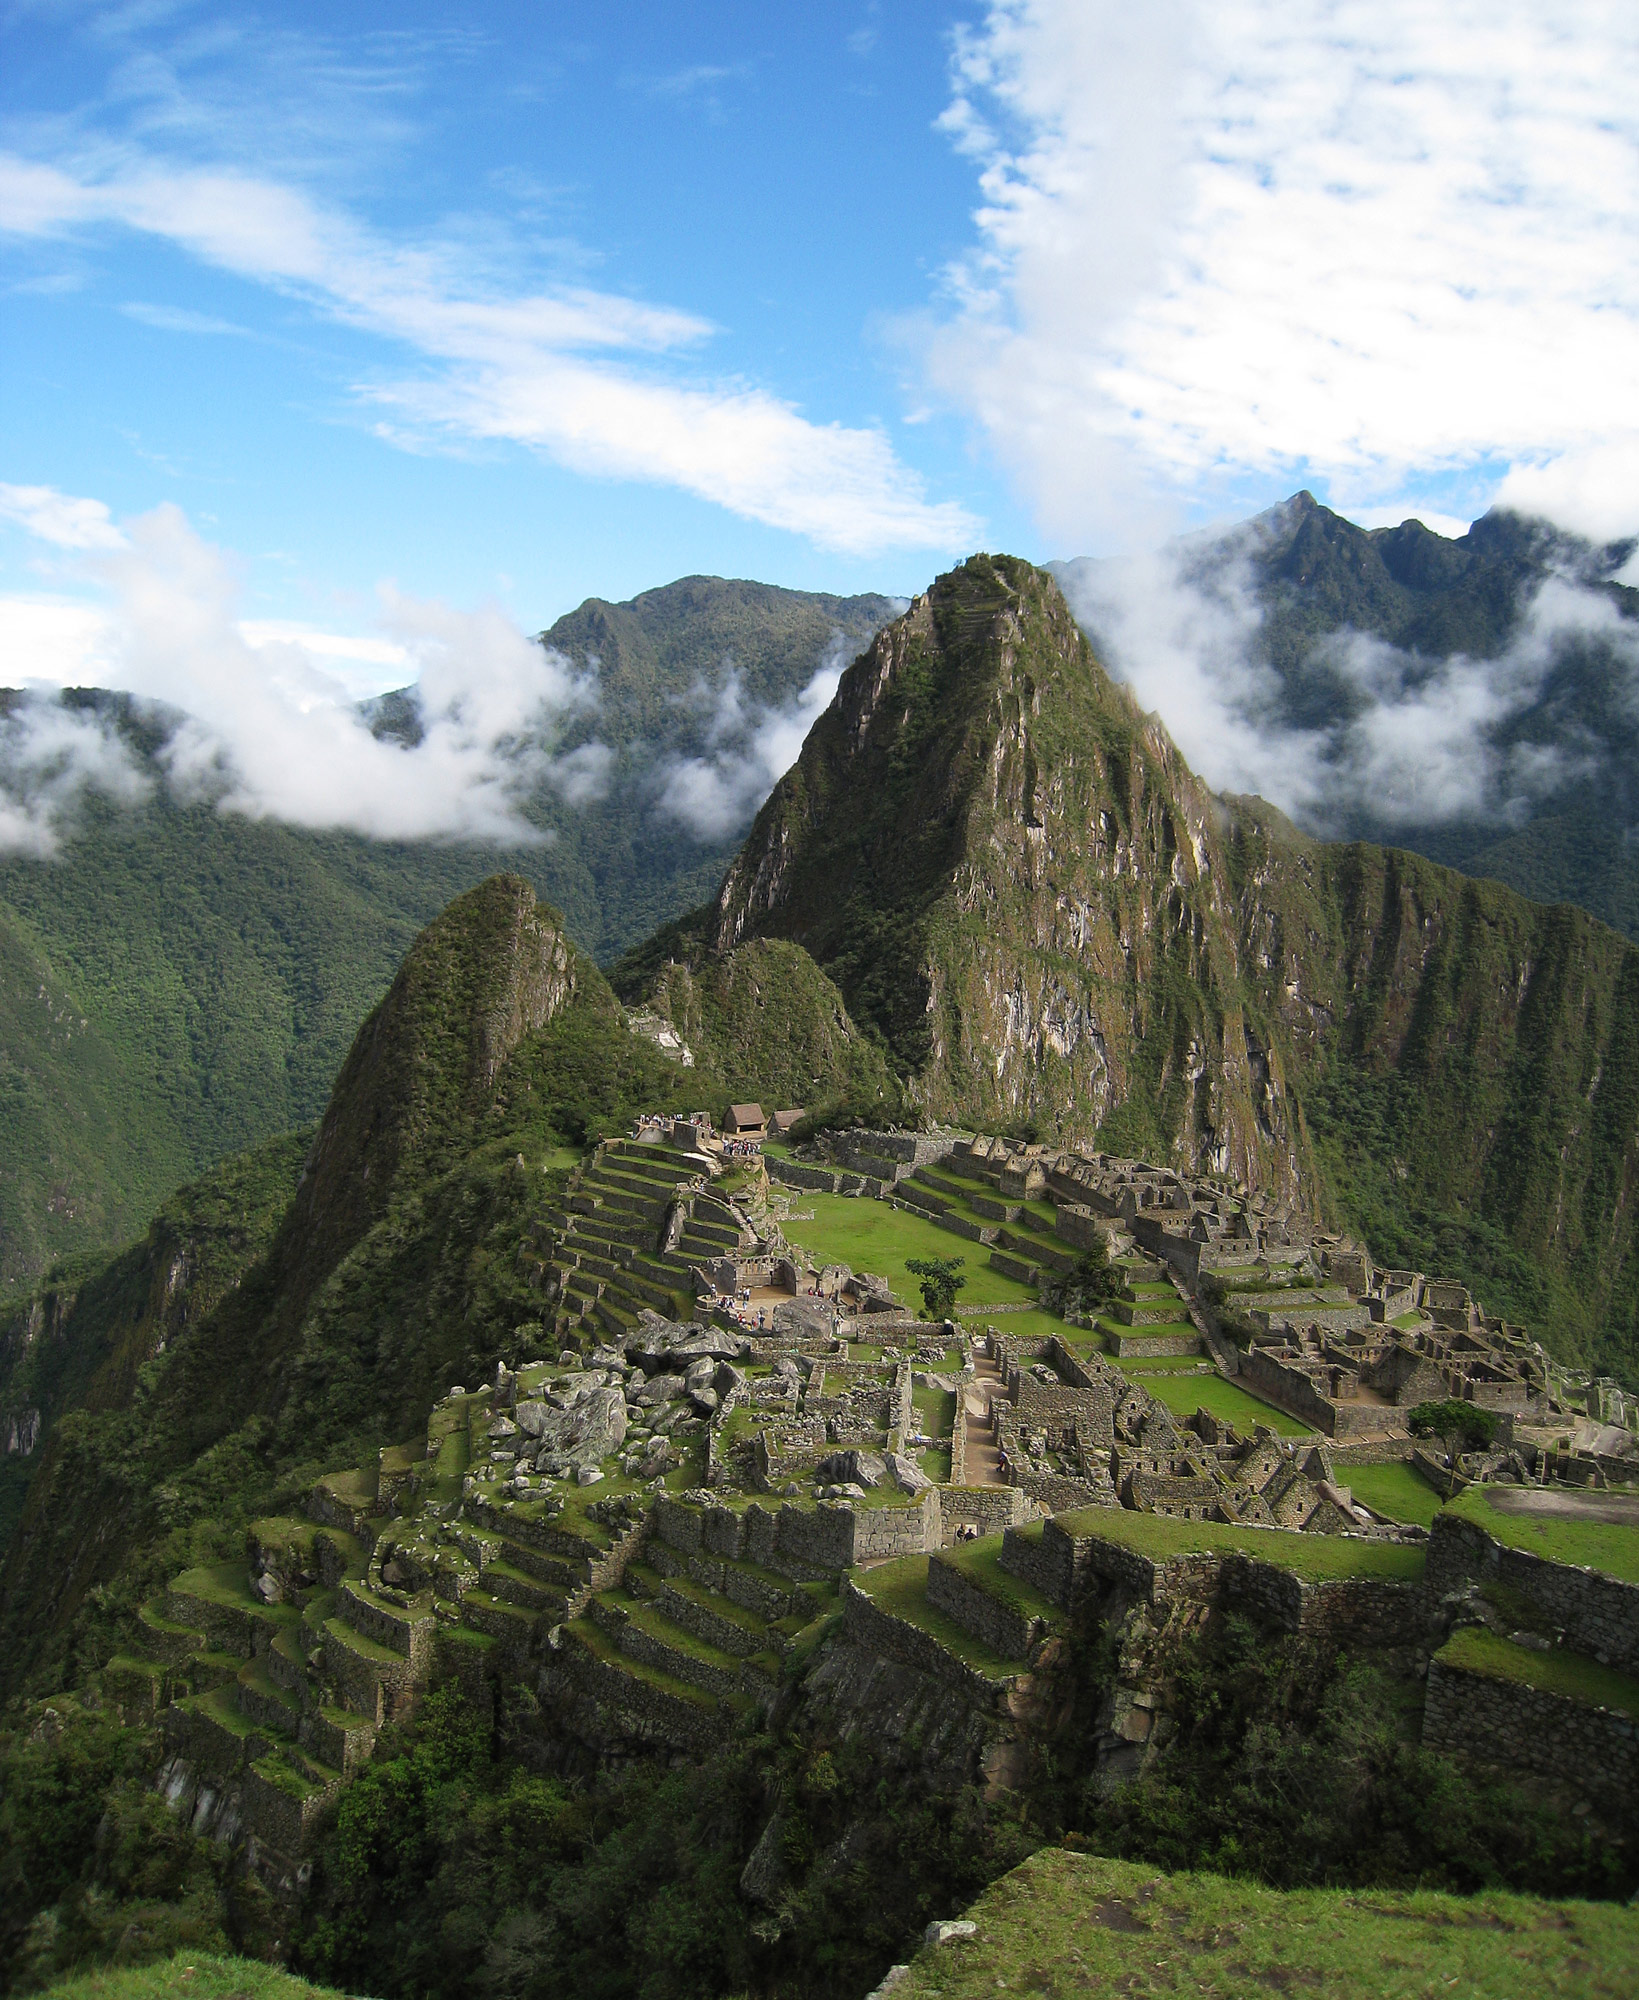 Las ruinas antiguas más conocidas de Perú, Machu Picchu. Foto del usuario de Flickr Icelight (CC BY).